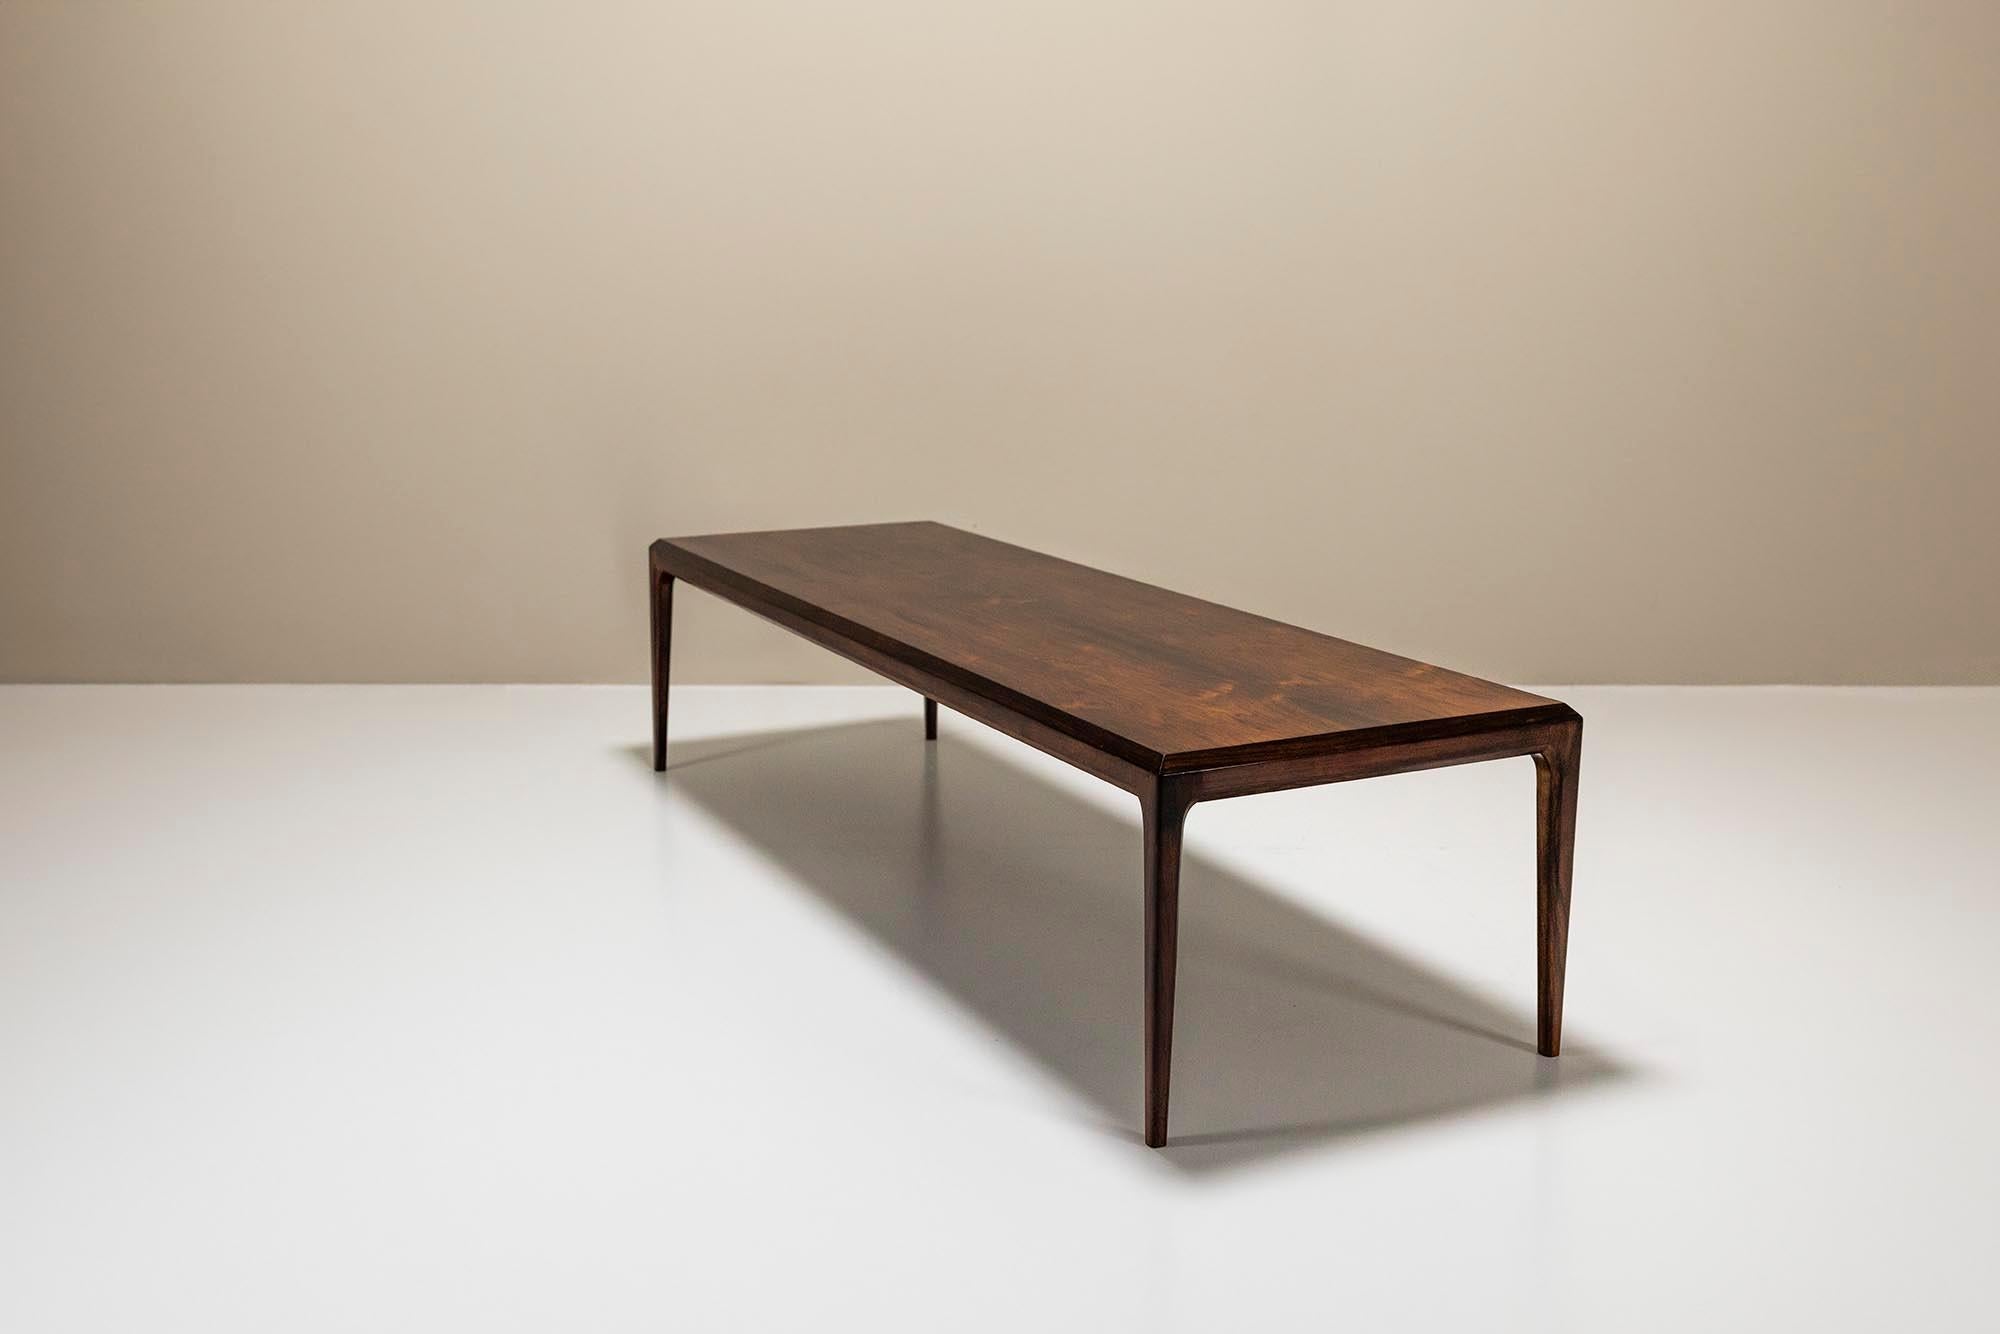 Cette table basse produite dans les années 1960 pour Silkeborg Møbelfabrik est une belle pièce de design et d'artisanat. Fabriquée à partir d'un magnifique bois de rose, la table présente un dessin spectaculaire et une patine extrêmement chaleureuse